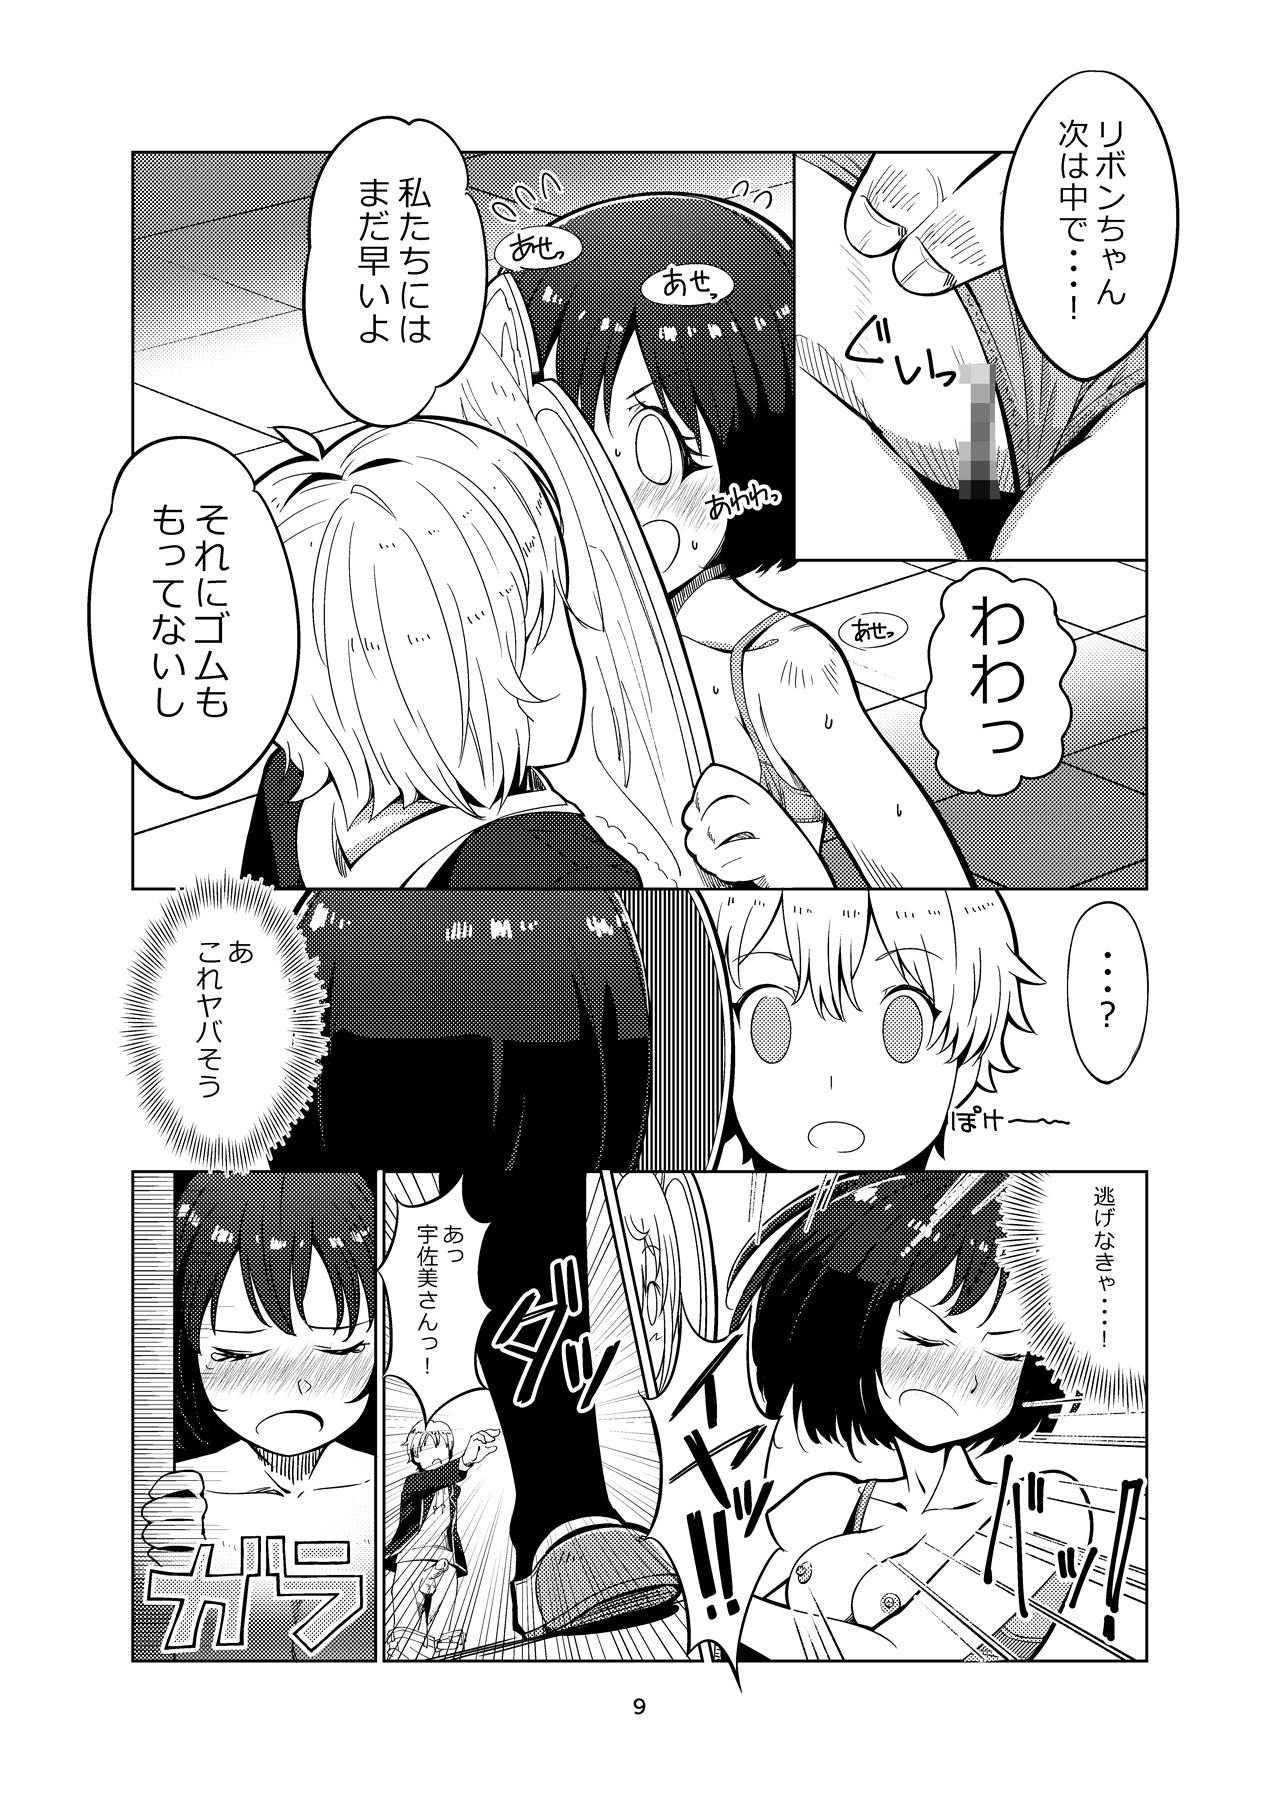 Naughty Kono Bijutsubu ni wa Monmon Girl - Kono bijutsubu ni wa mondai ga aru Transex - Page 8